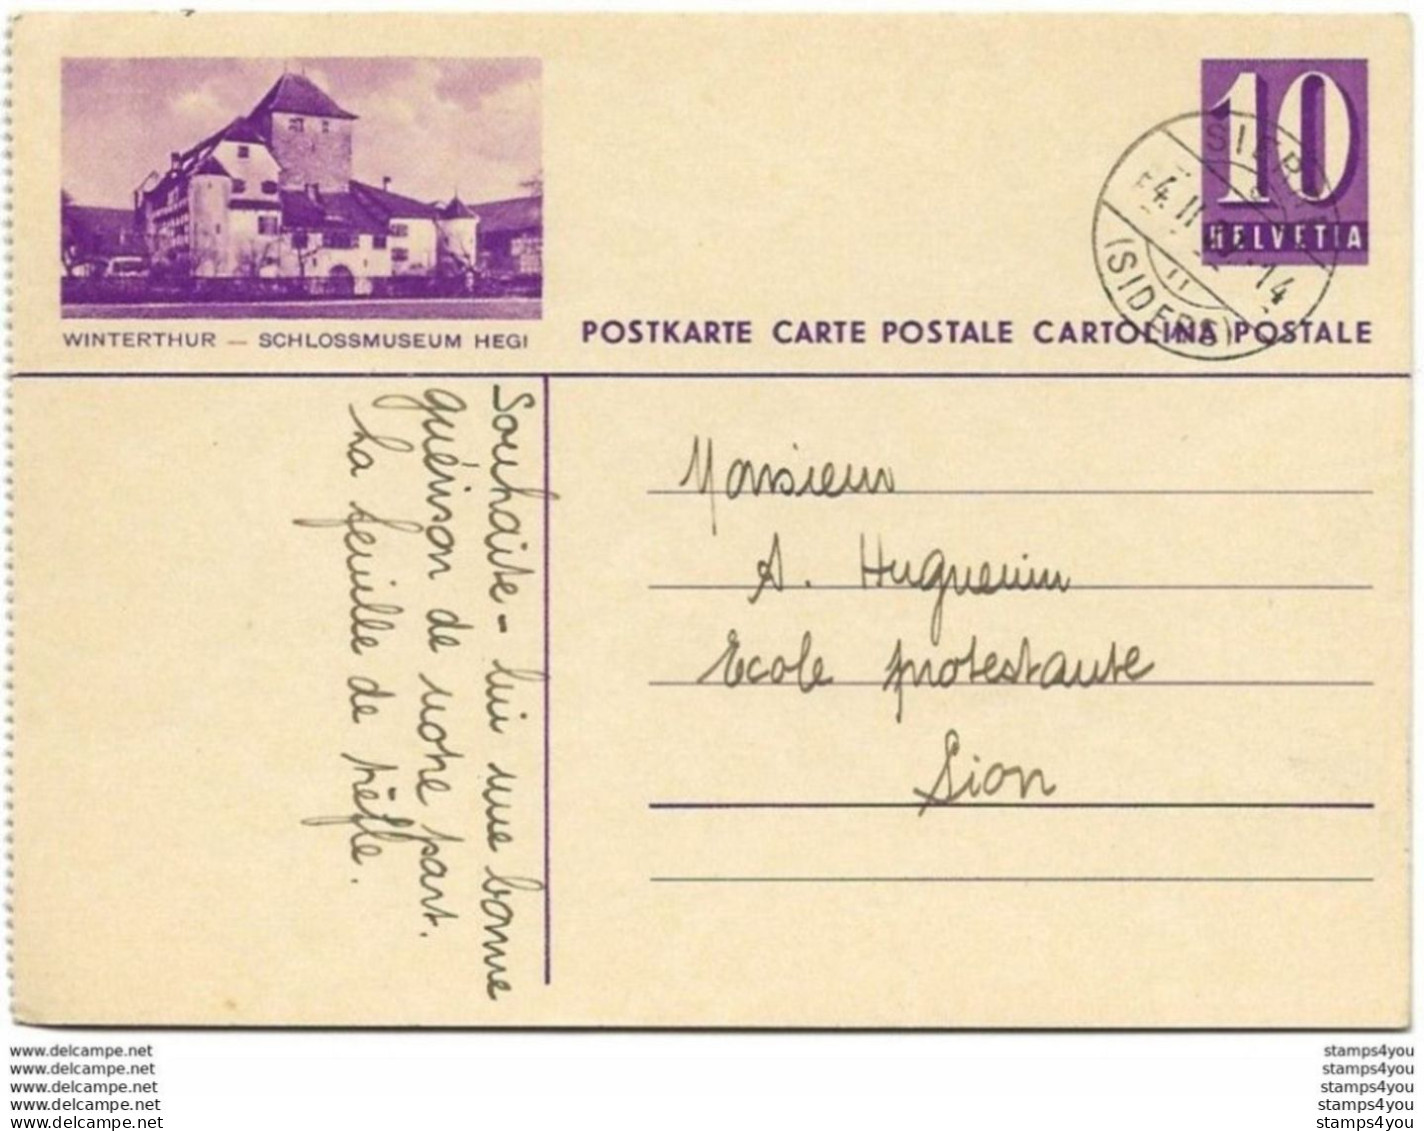 103 - 5 - Entier Postal Avec Illustration "Winterthur" Superbe Cachet à Date Sierre 1939 - Entiers Postaux